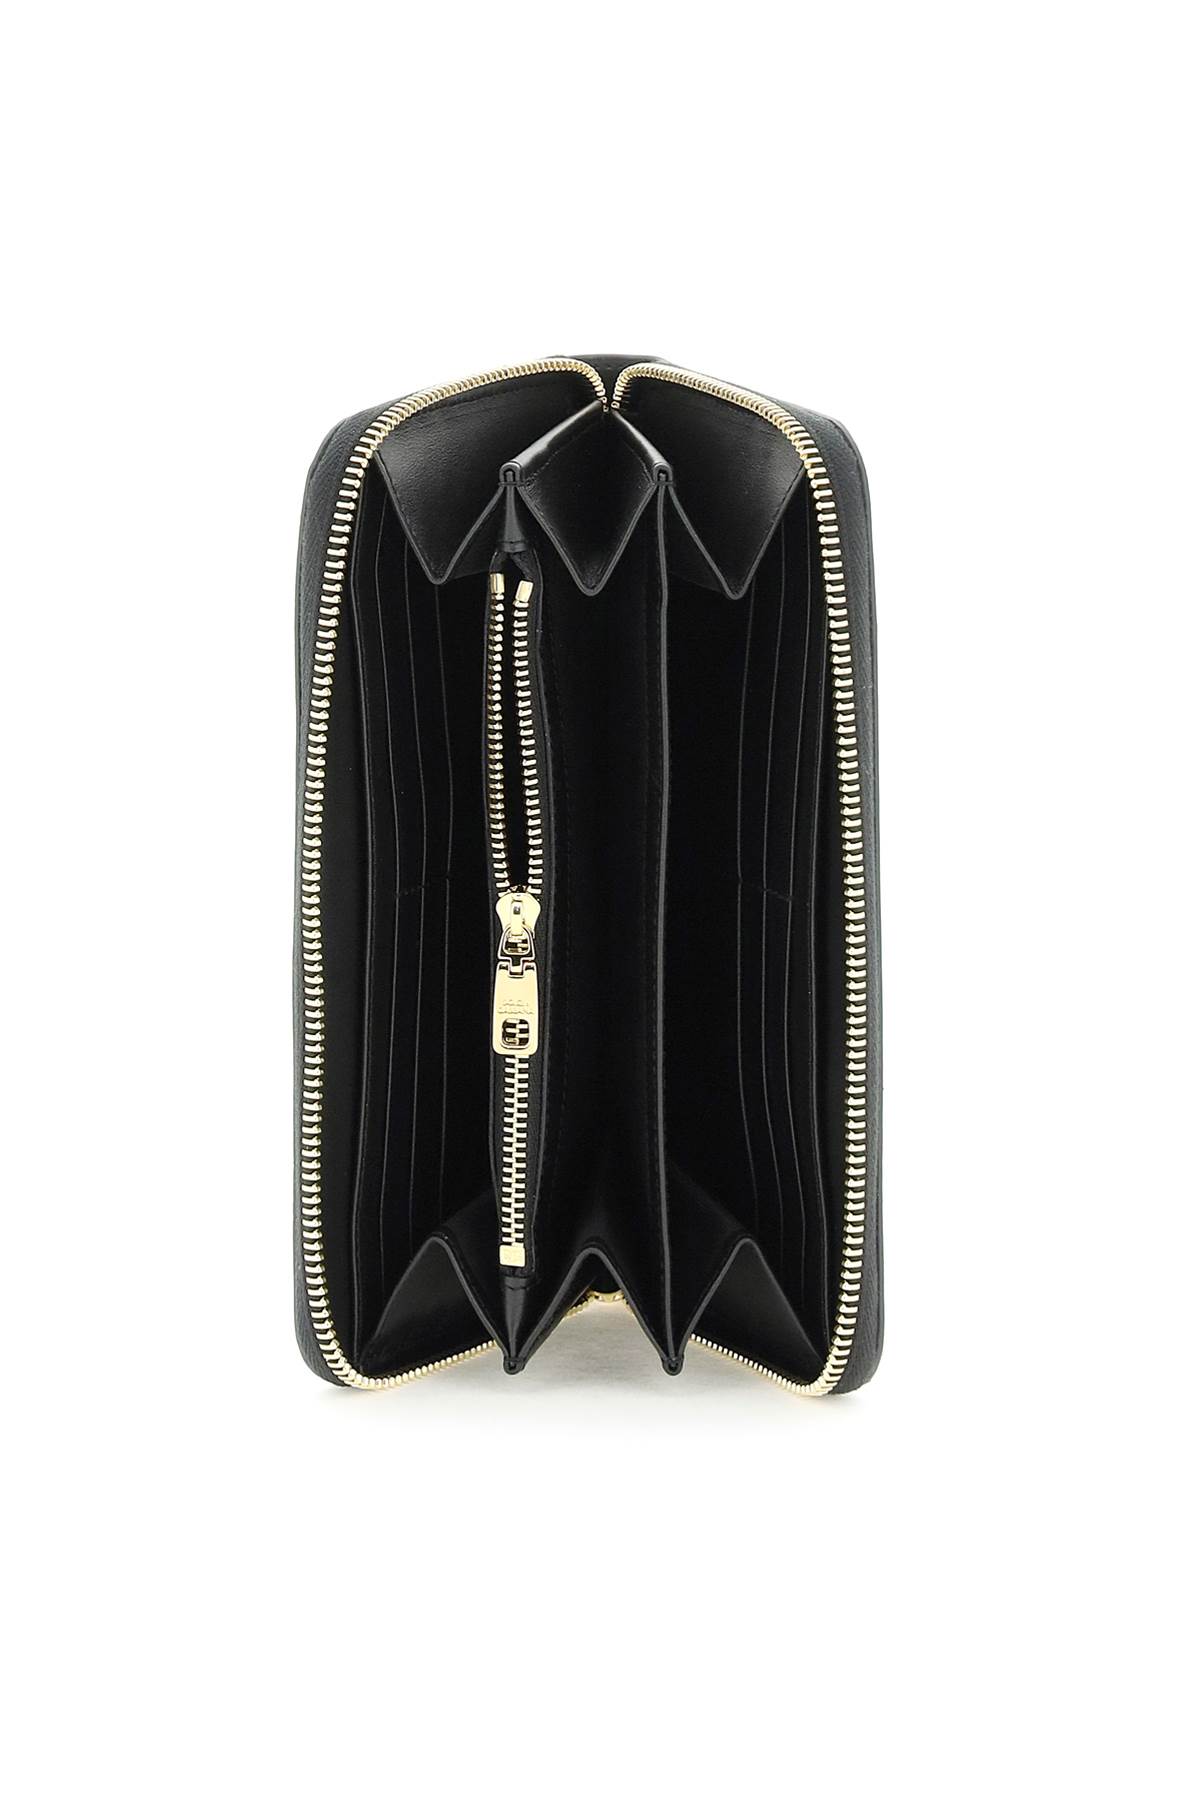 Shop Dolce & Gabbana Zip Around Leather Wallet